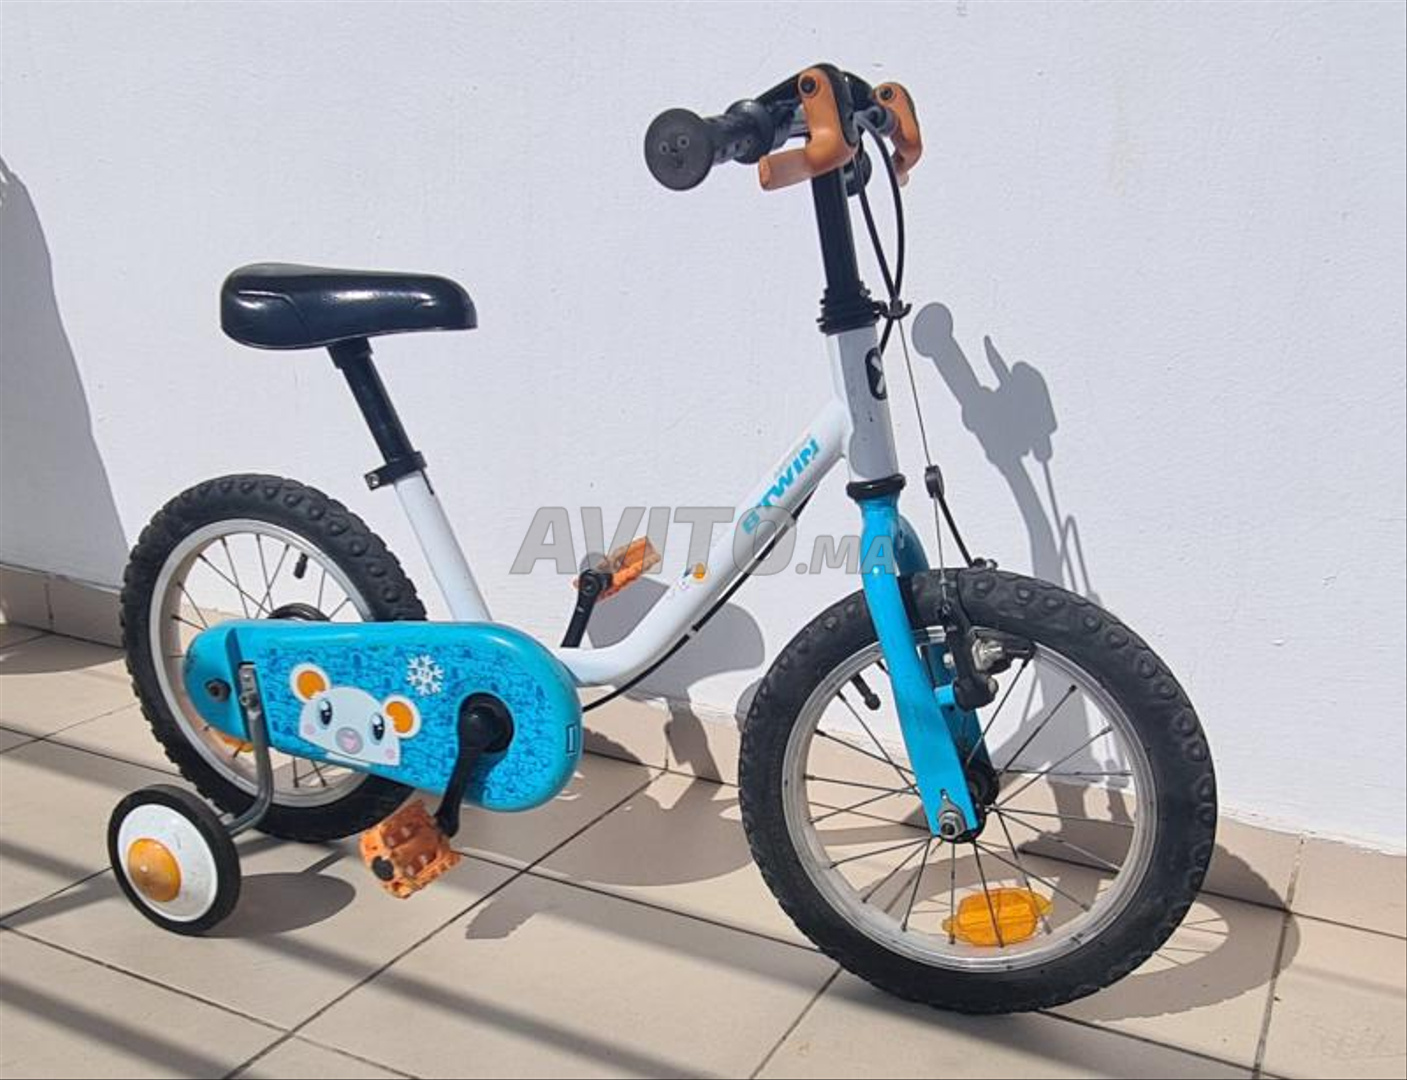 Veloenfant  Le Premier Site Spécialisé en Vélos pour Enfants au Maroc